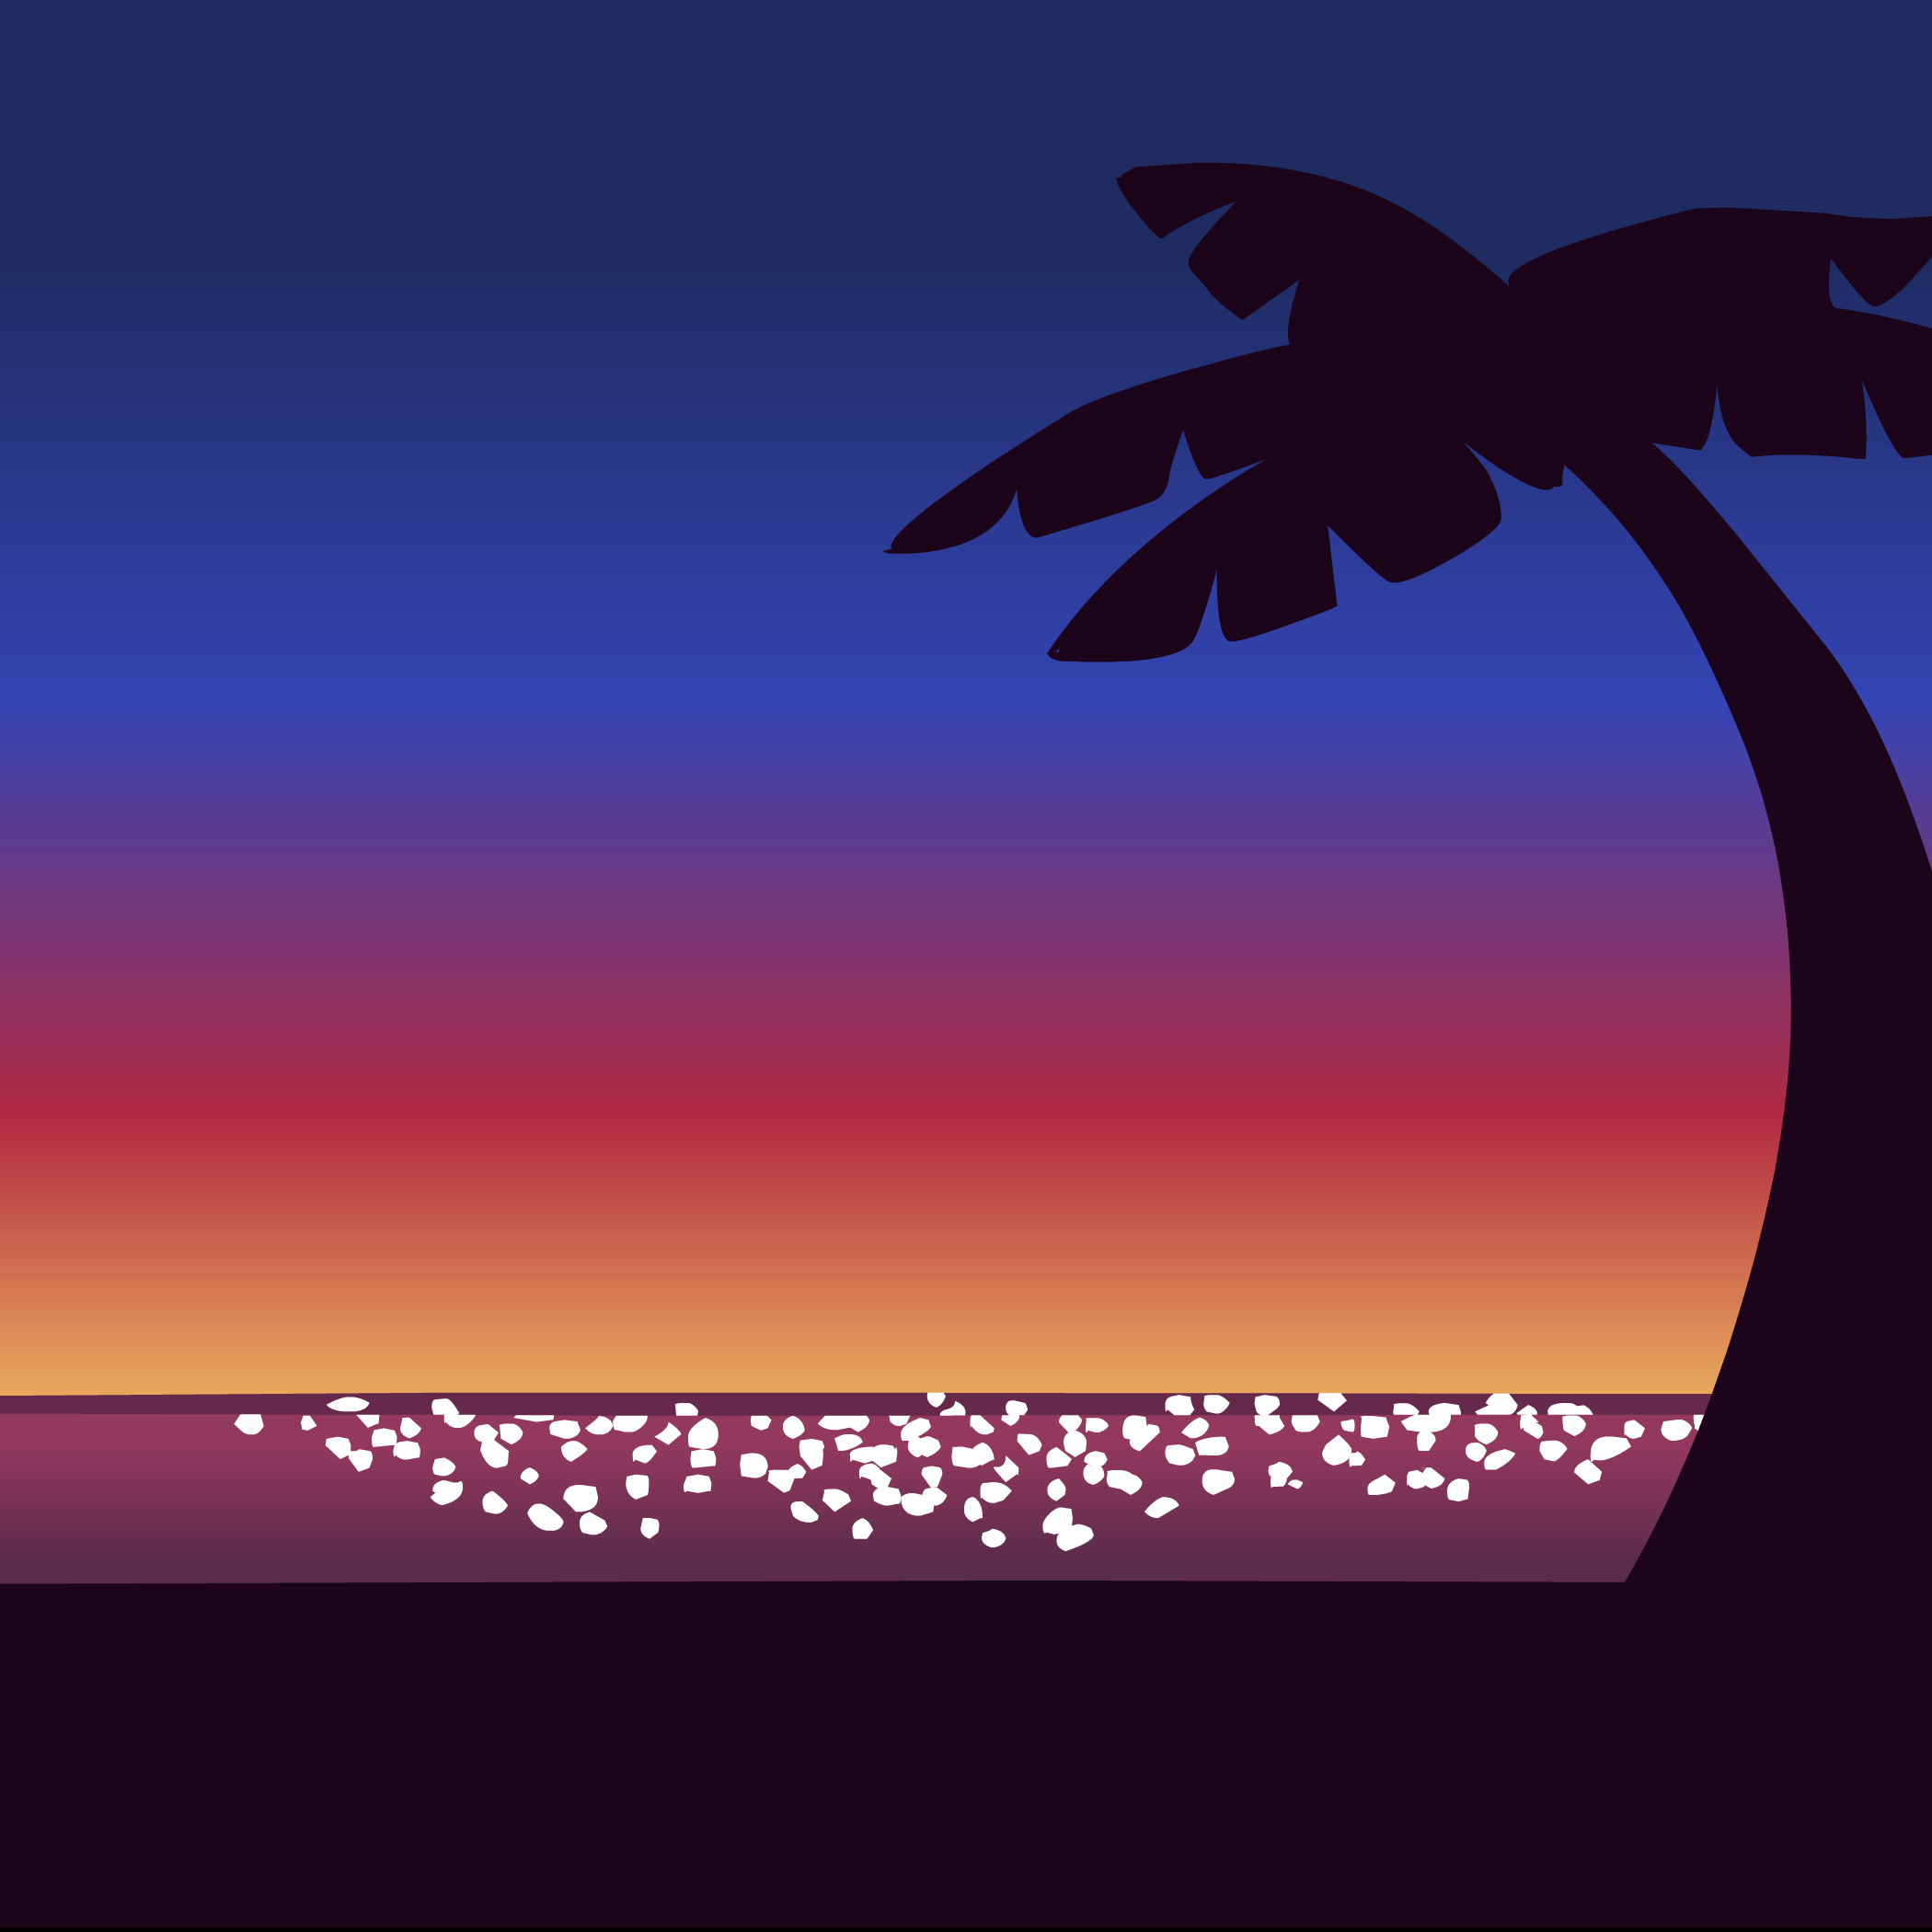 Sunset Background | Club Penguin Rewritten Wiki | Fandom